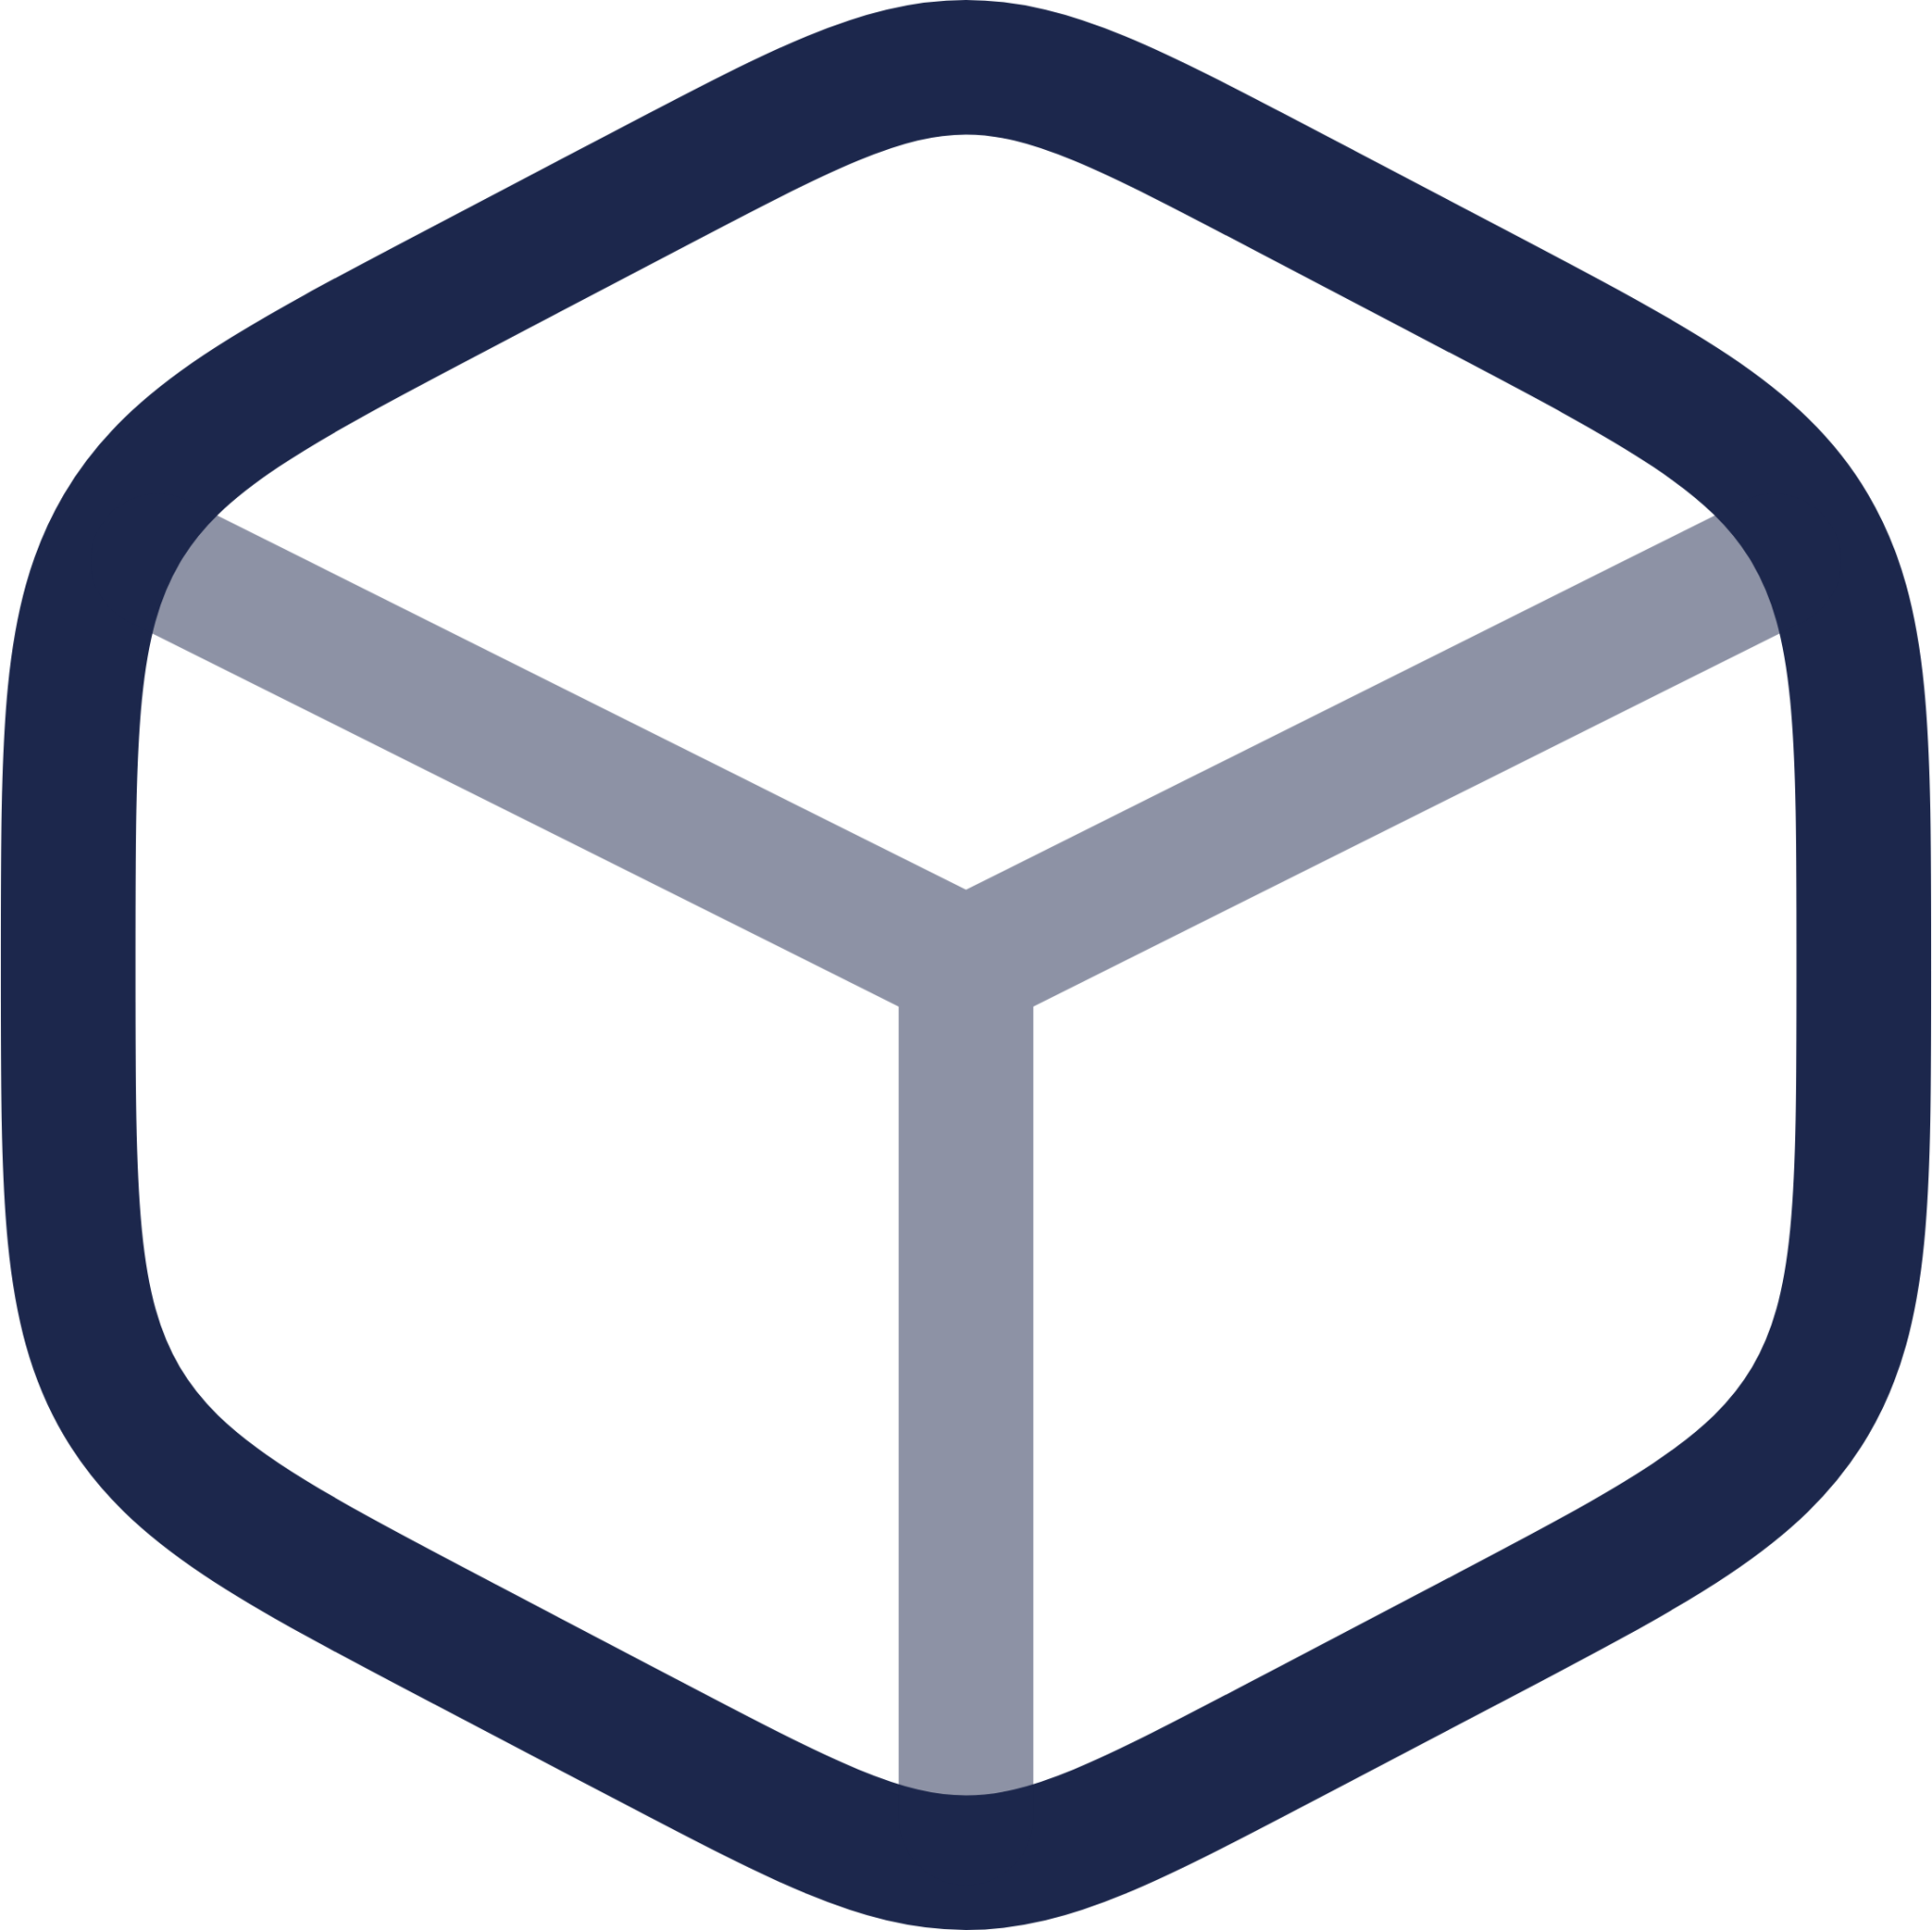 Box Minimalistic icon